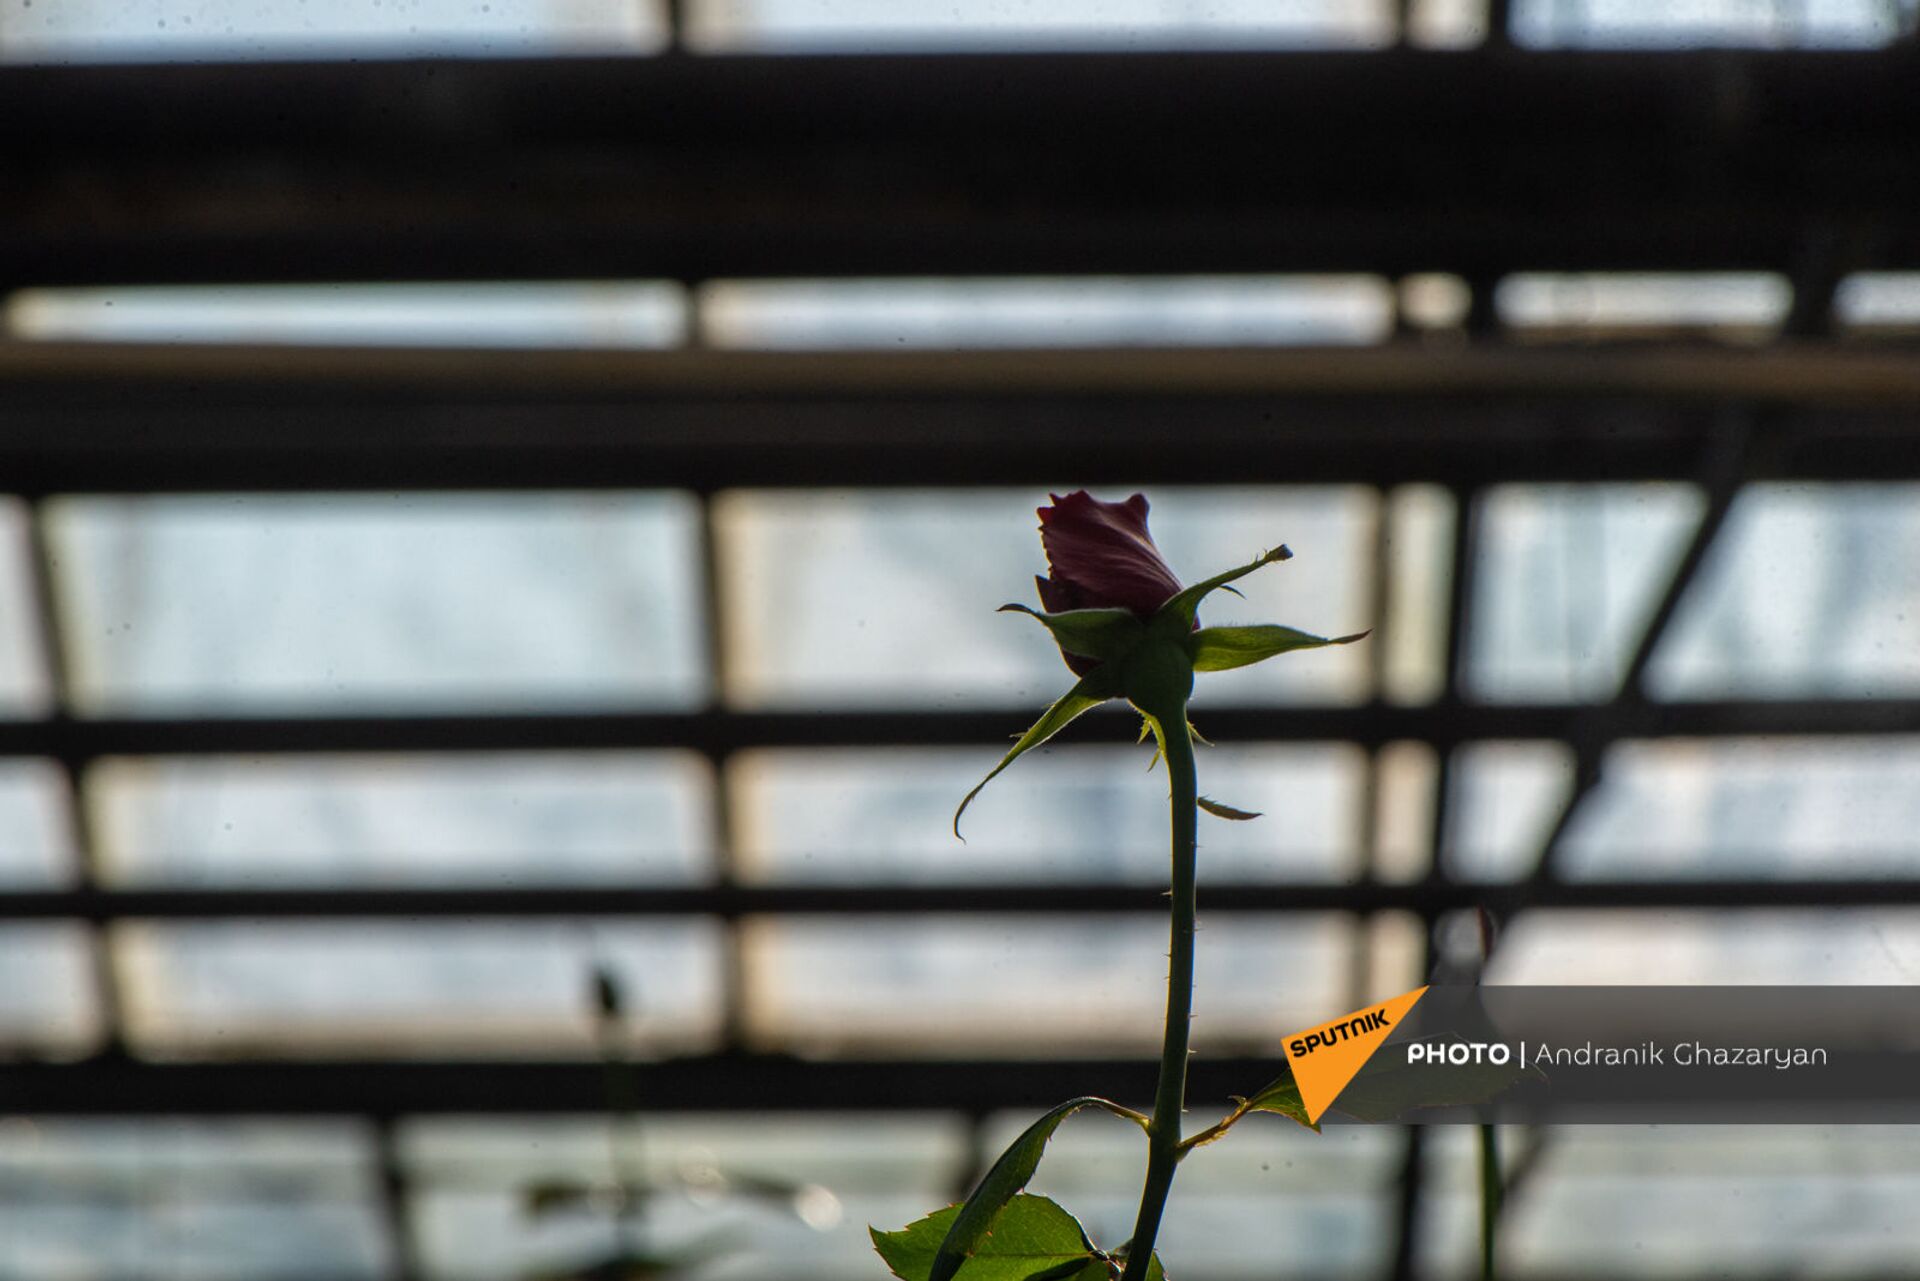 Ծաղկավաճառ կնոջը երբեք ծաղիկ չեն նվիրում. «կիսահայաֆիկացված» վարդերը գրավել են շուկան - Sputnik Արմենիա, 1920, 08.03.2021